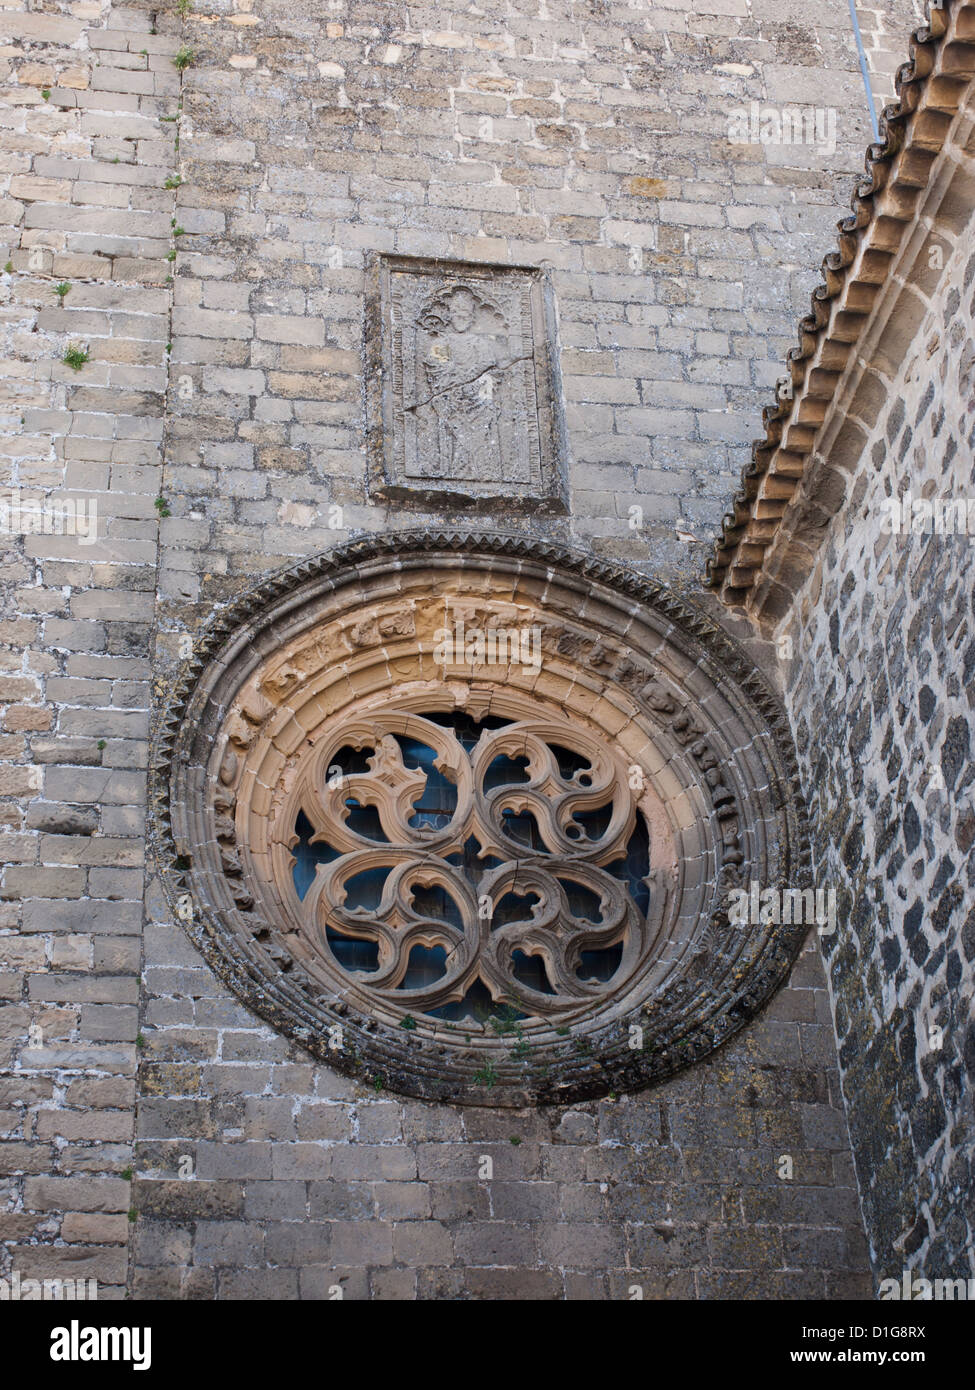 Patrimonio de la Humanidad Baeza ,Andalucía España, detalle de la fachada de la Iglesia con el rosetón, Catedral de la Natividad de Nuestra Señora de Baeza Foto de stock